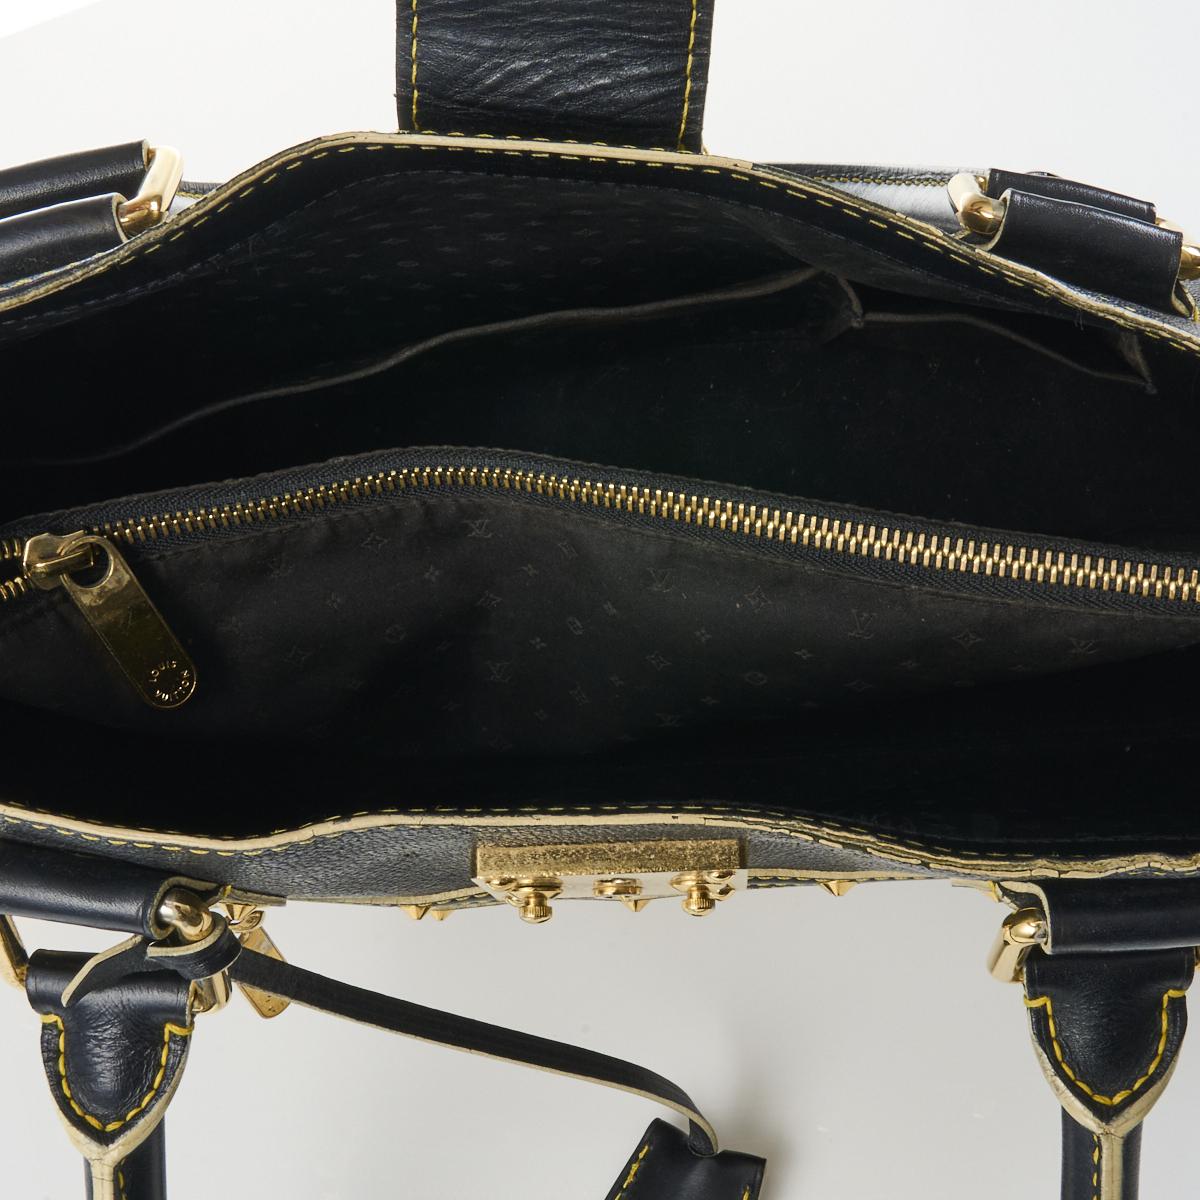 Louis Vuitton Black Suhali Leather Le Fabuleux Bag Louis Vuitton